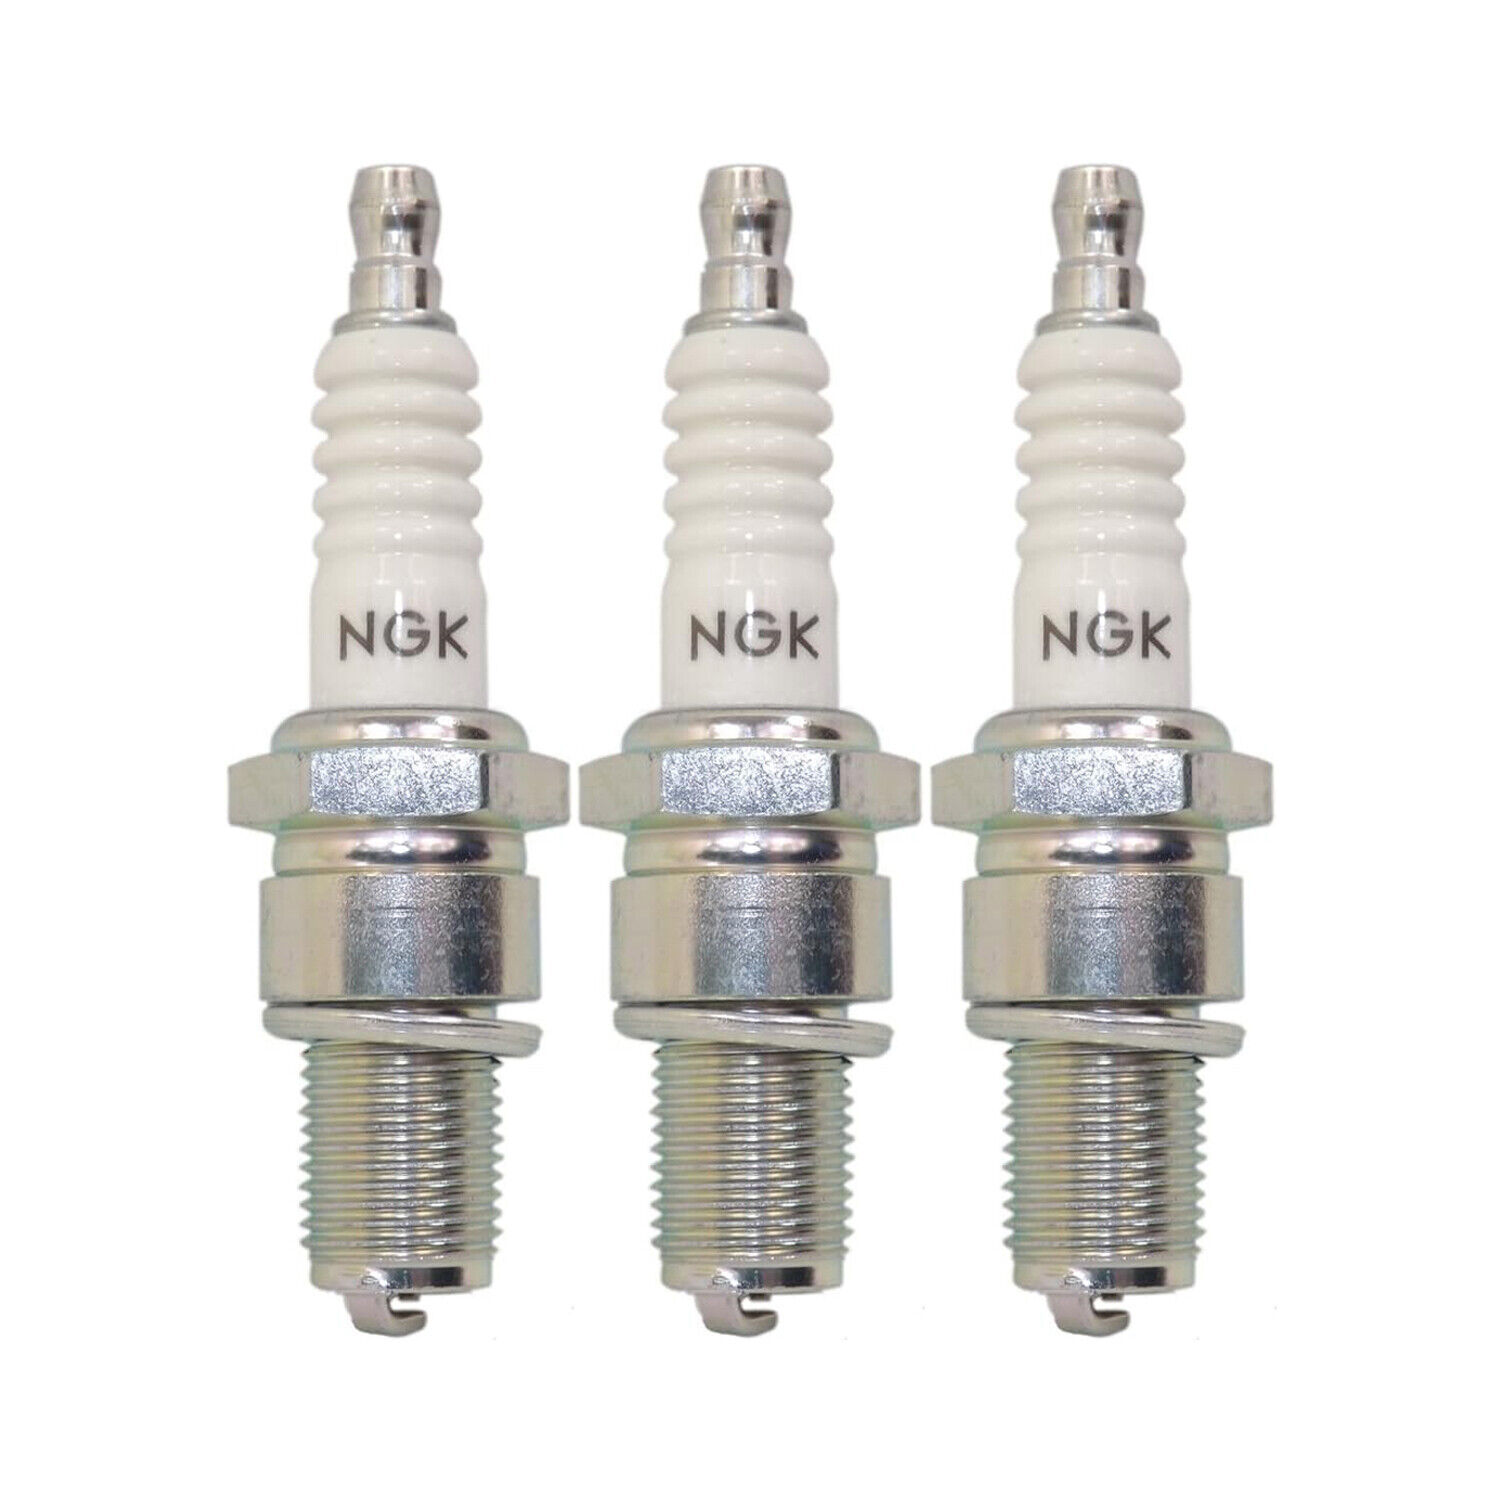 NGK Standard Spark Plug Set 3 Pieces 7634 For Sprint Charade 1.0 L3